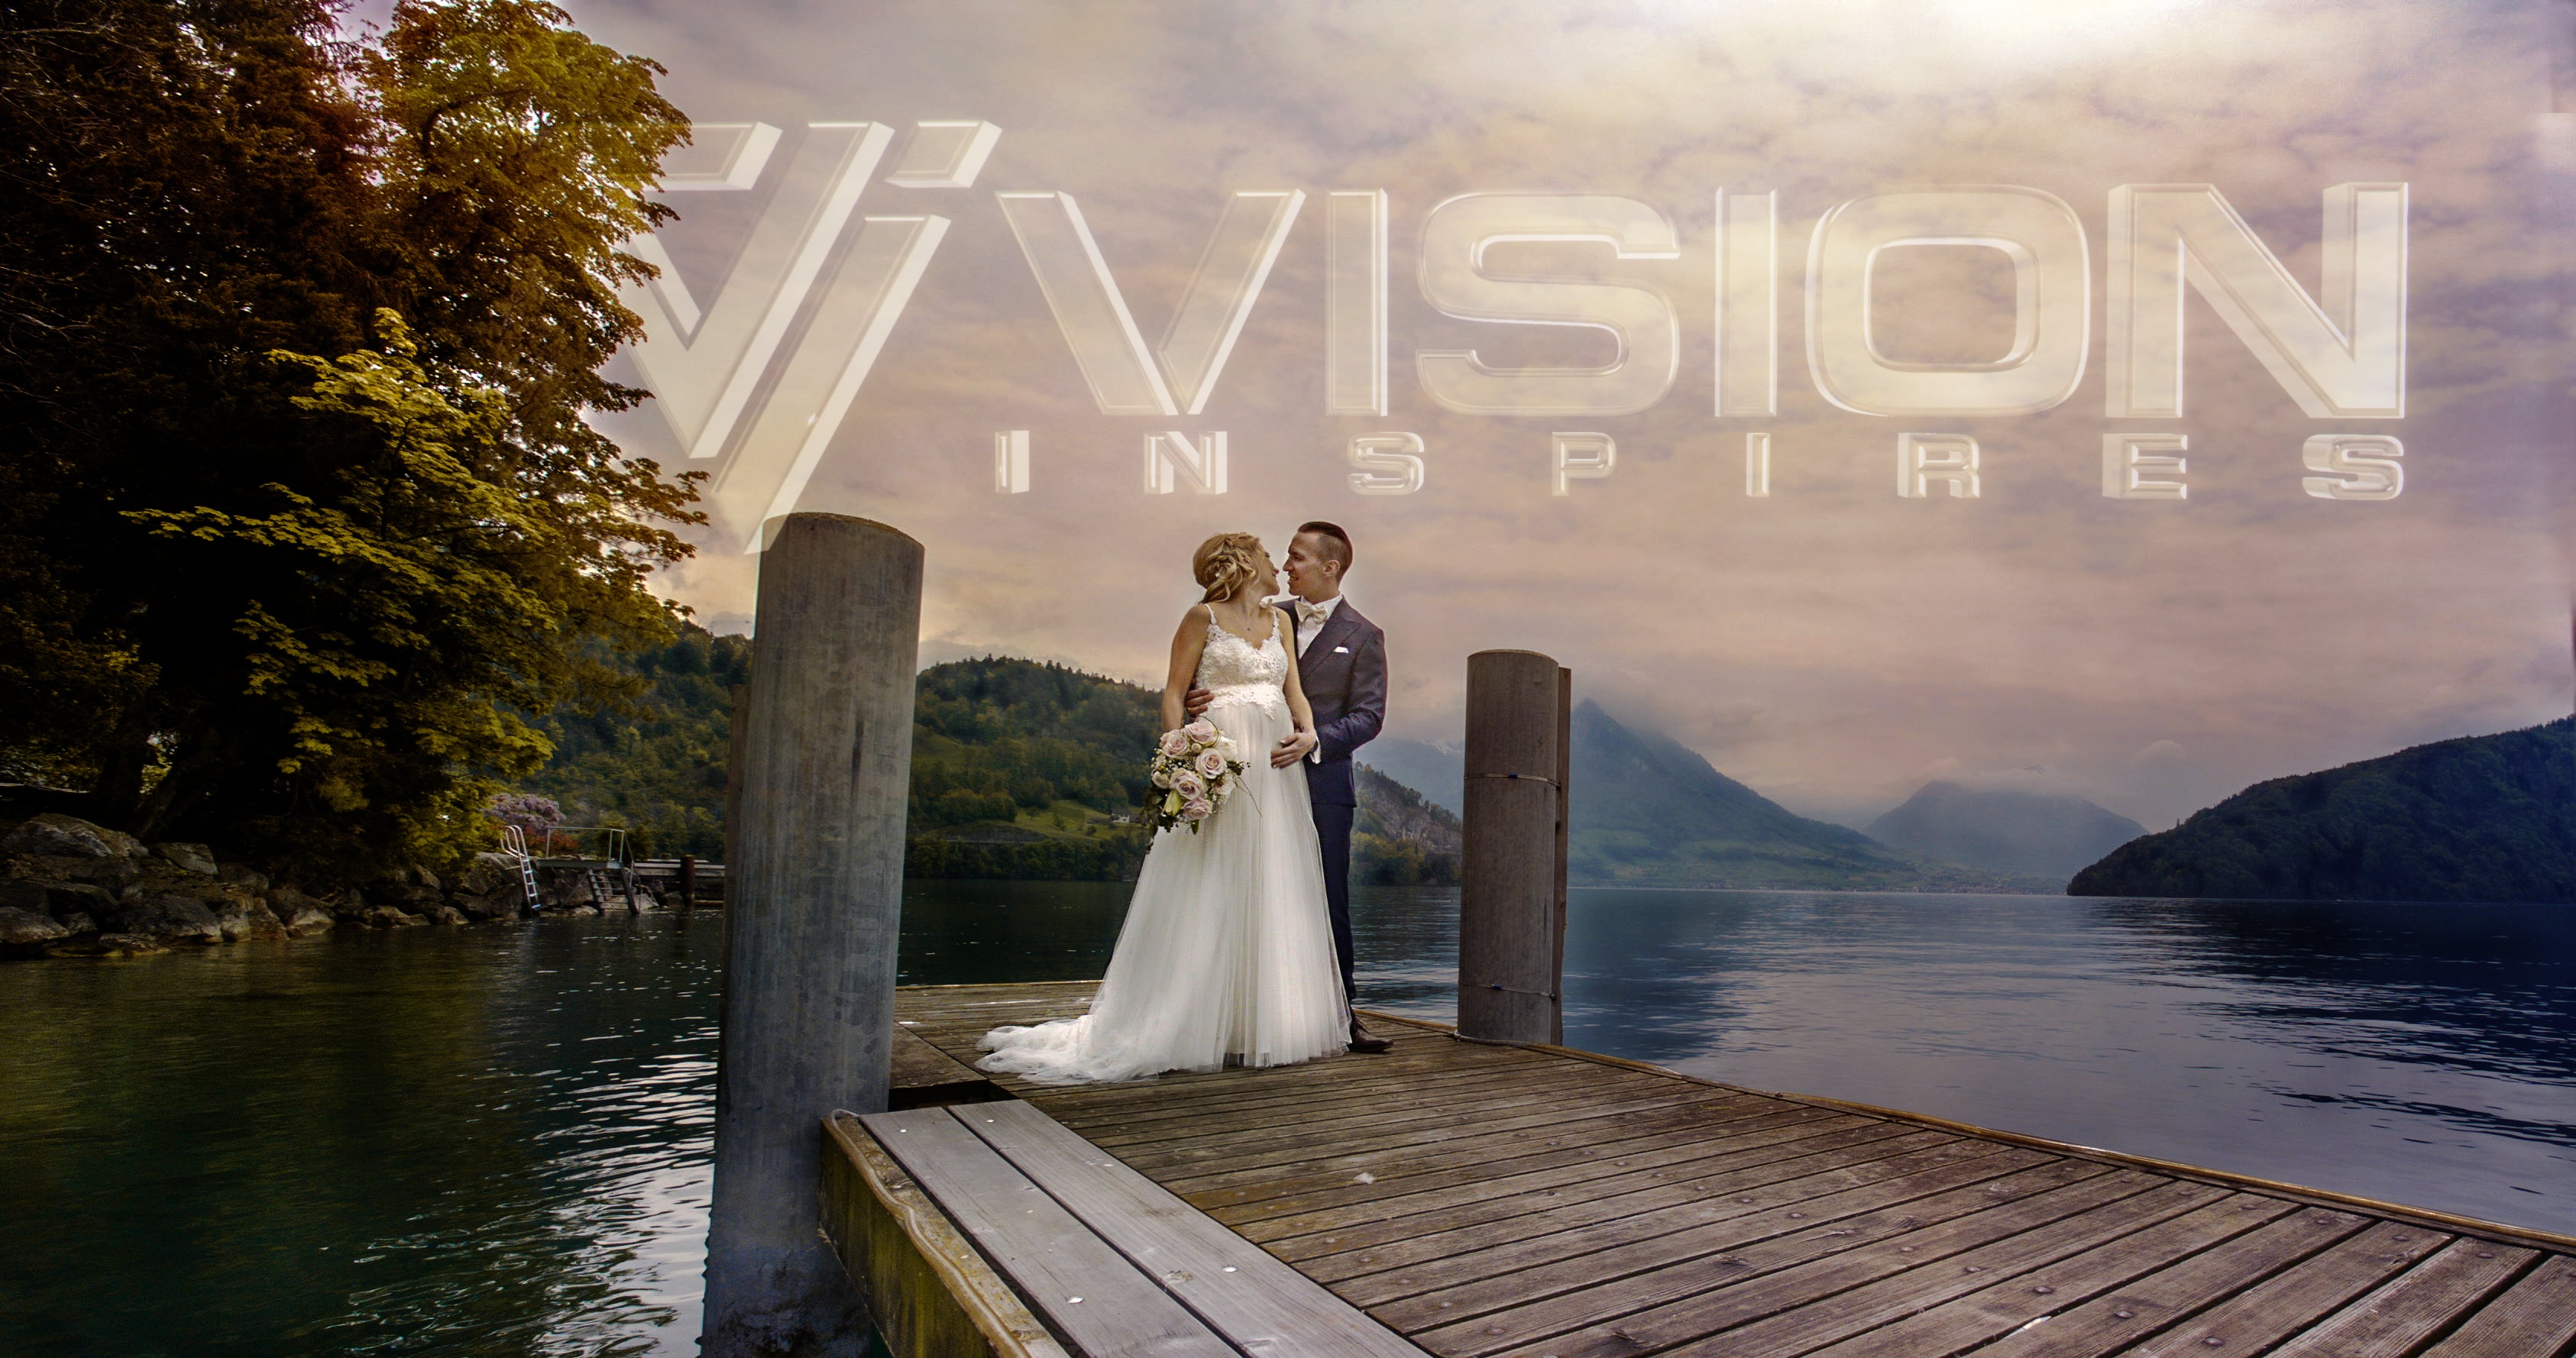 Vision Inspires Weddings